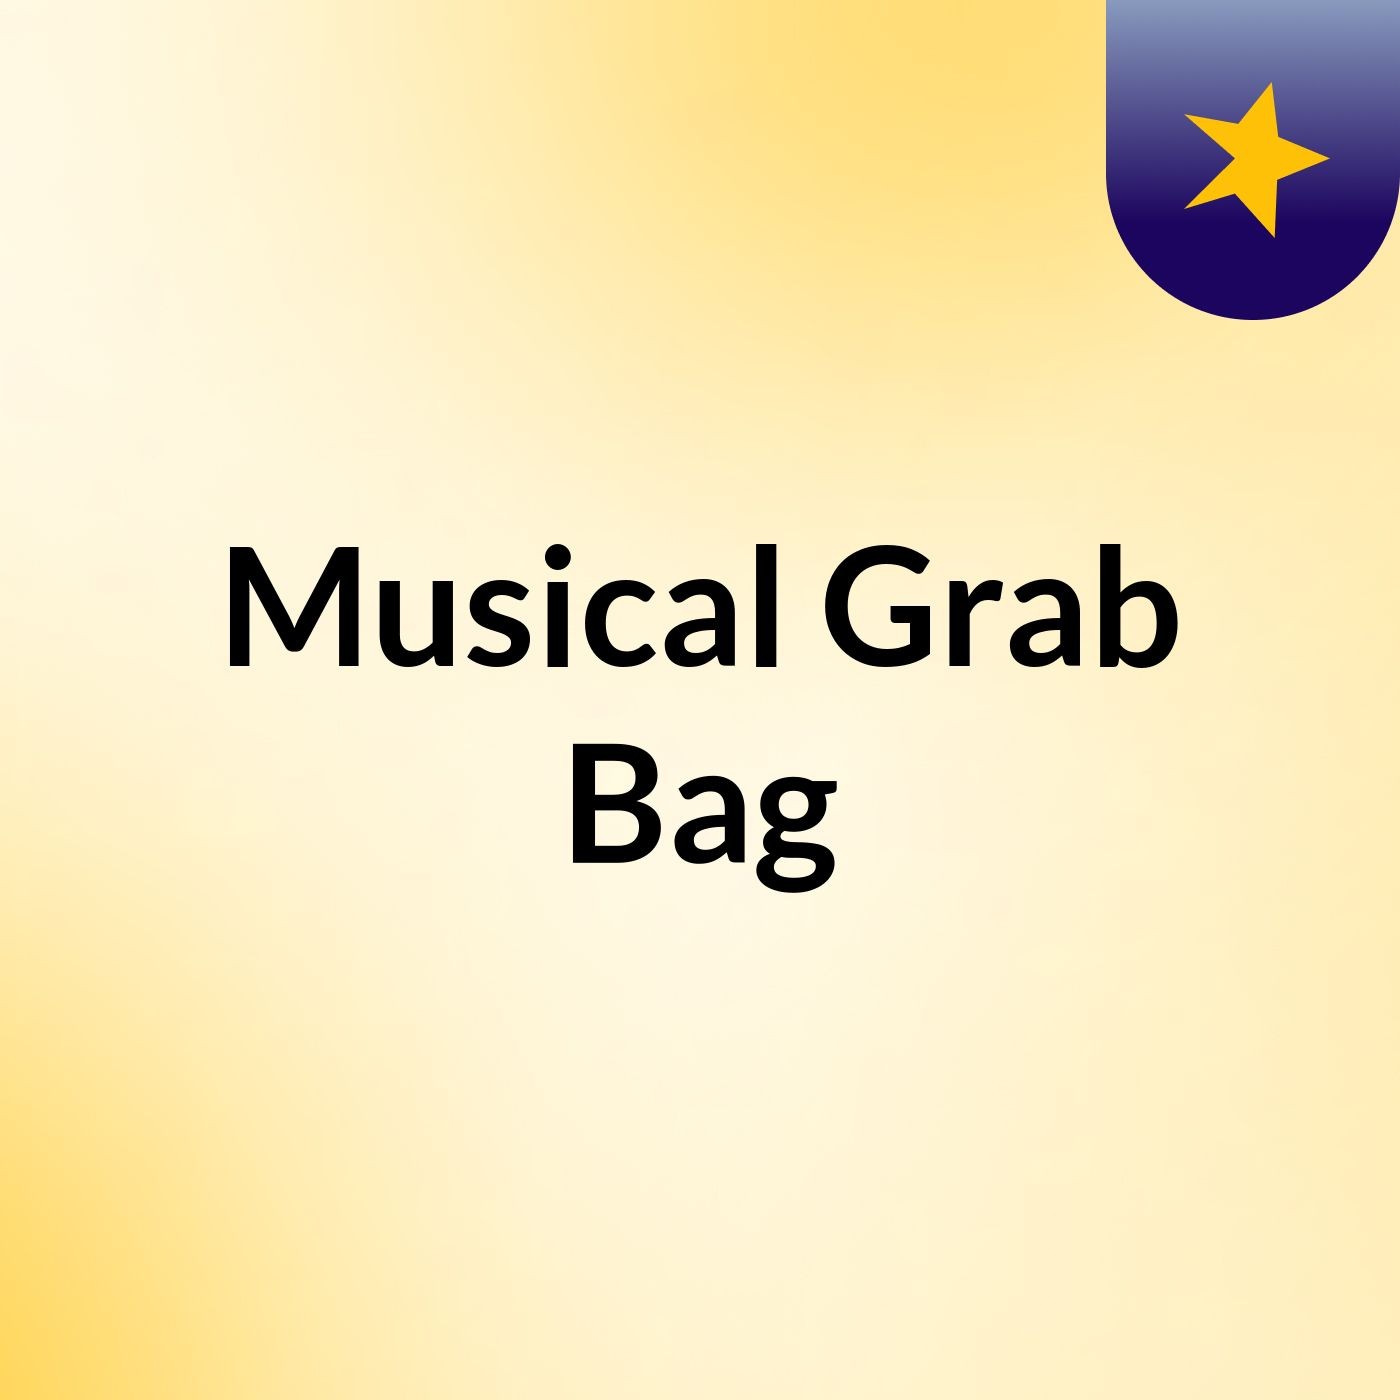 Musical Grab Bag